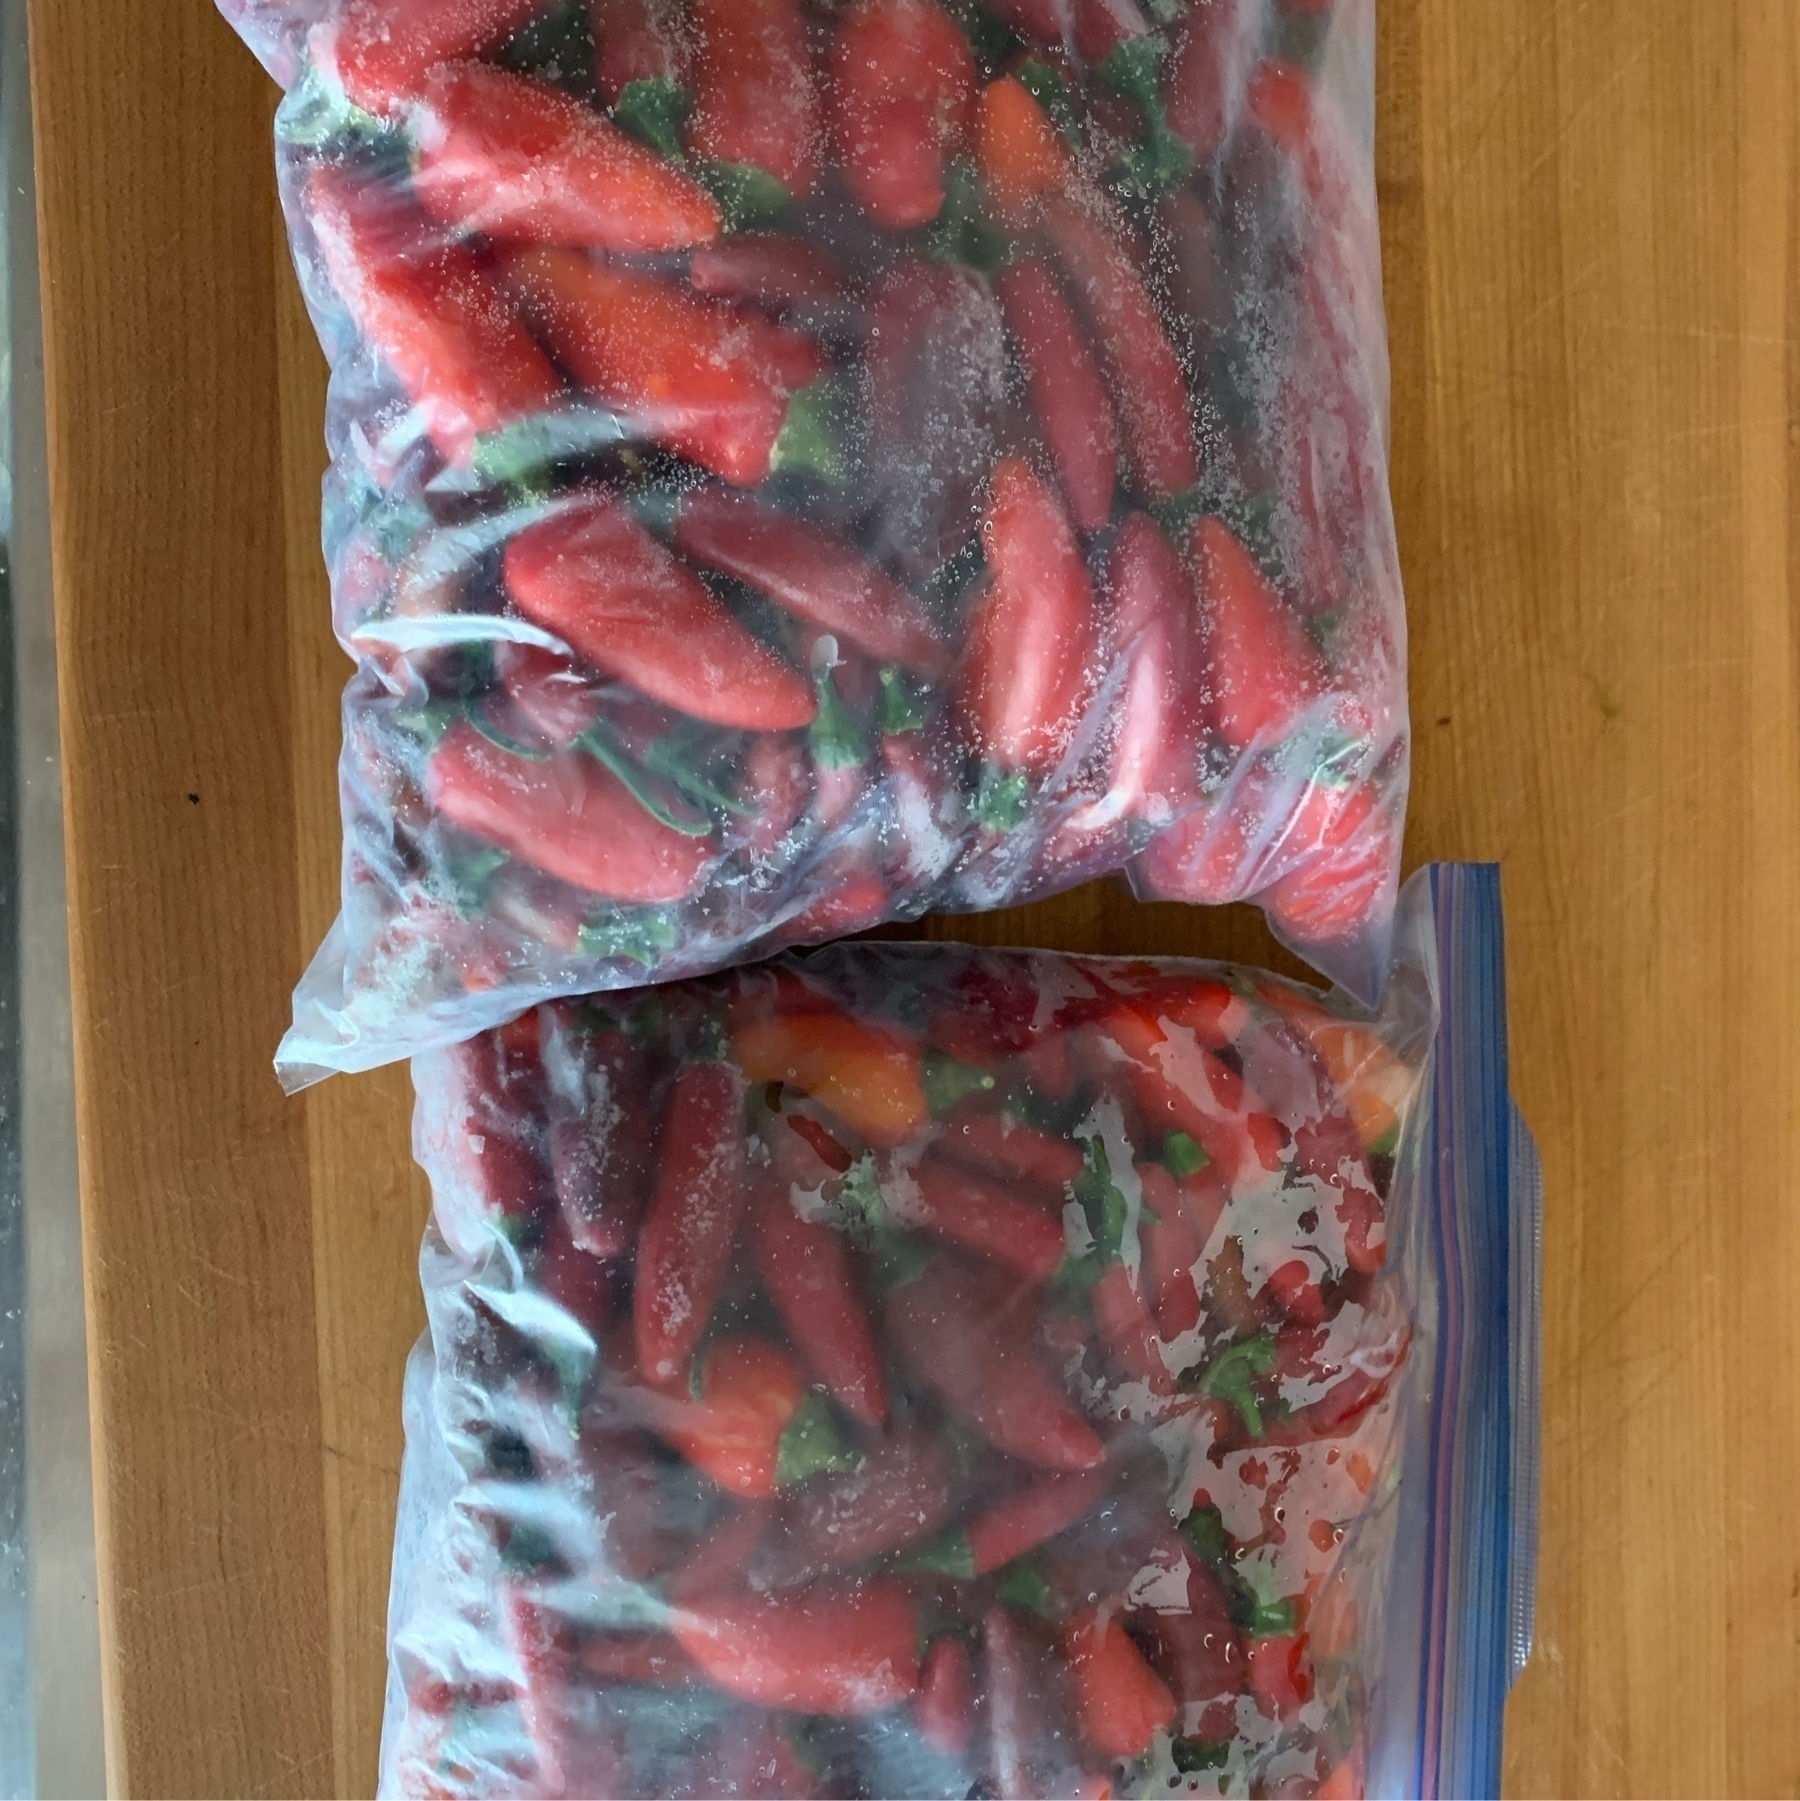 frozen home grown peppers in ziplock bags